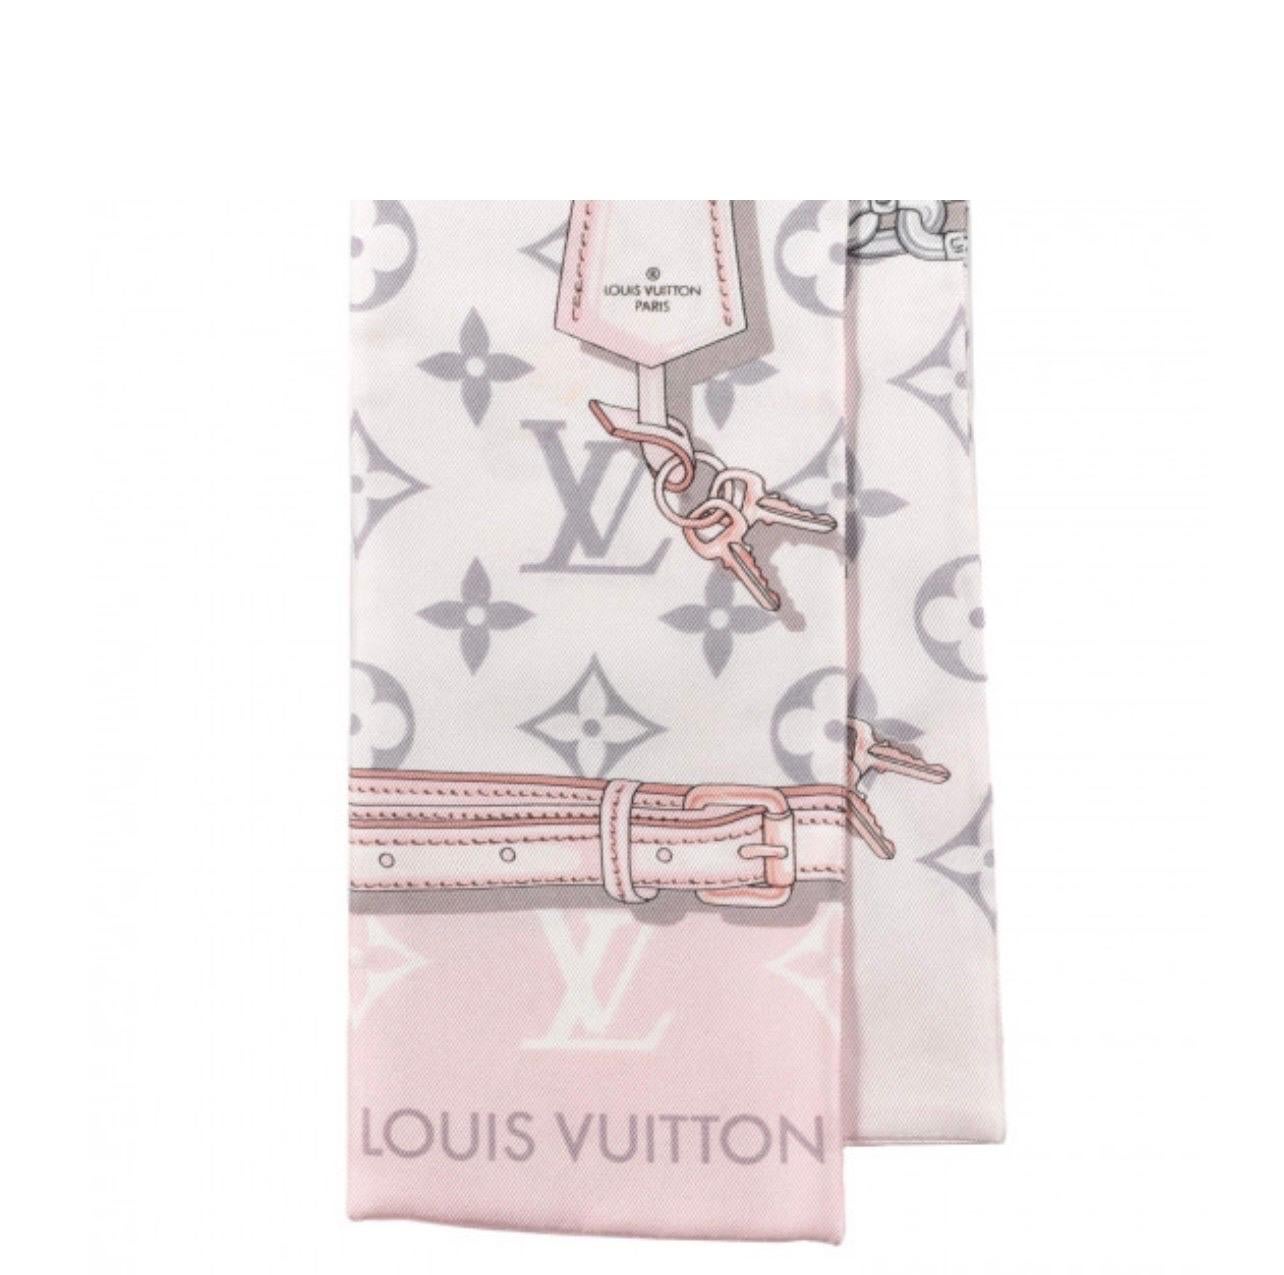 Brand New Louis Vuitton Rose Ballerine Monogram Giant Escale Silk Square Scarf , hat nie getragen worden. Kommt in Originalverpackung. Alle Schilder sind angeheftet 
Nehmen Sie diesen schönen Schal mit Monogrammen als Geschenk mit nach Hause, da er